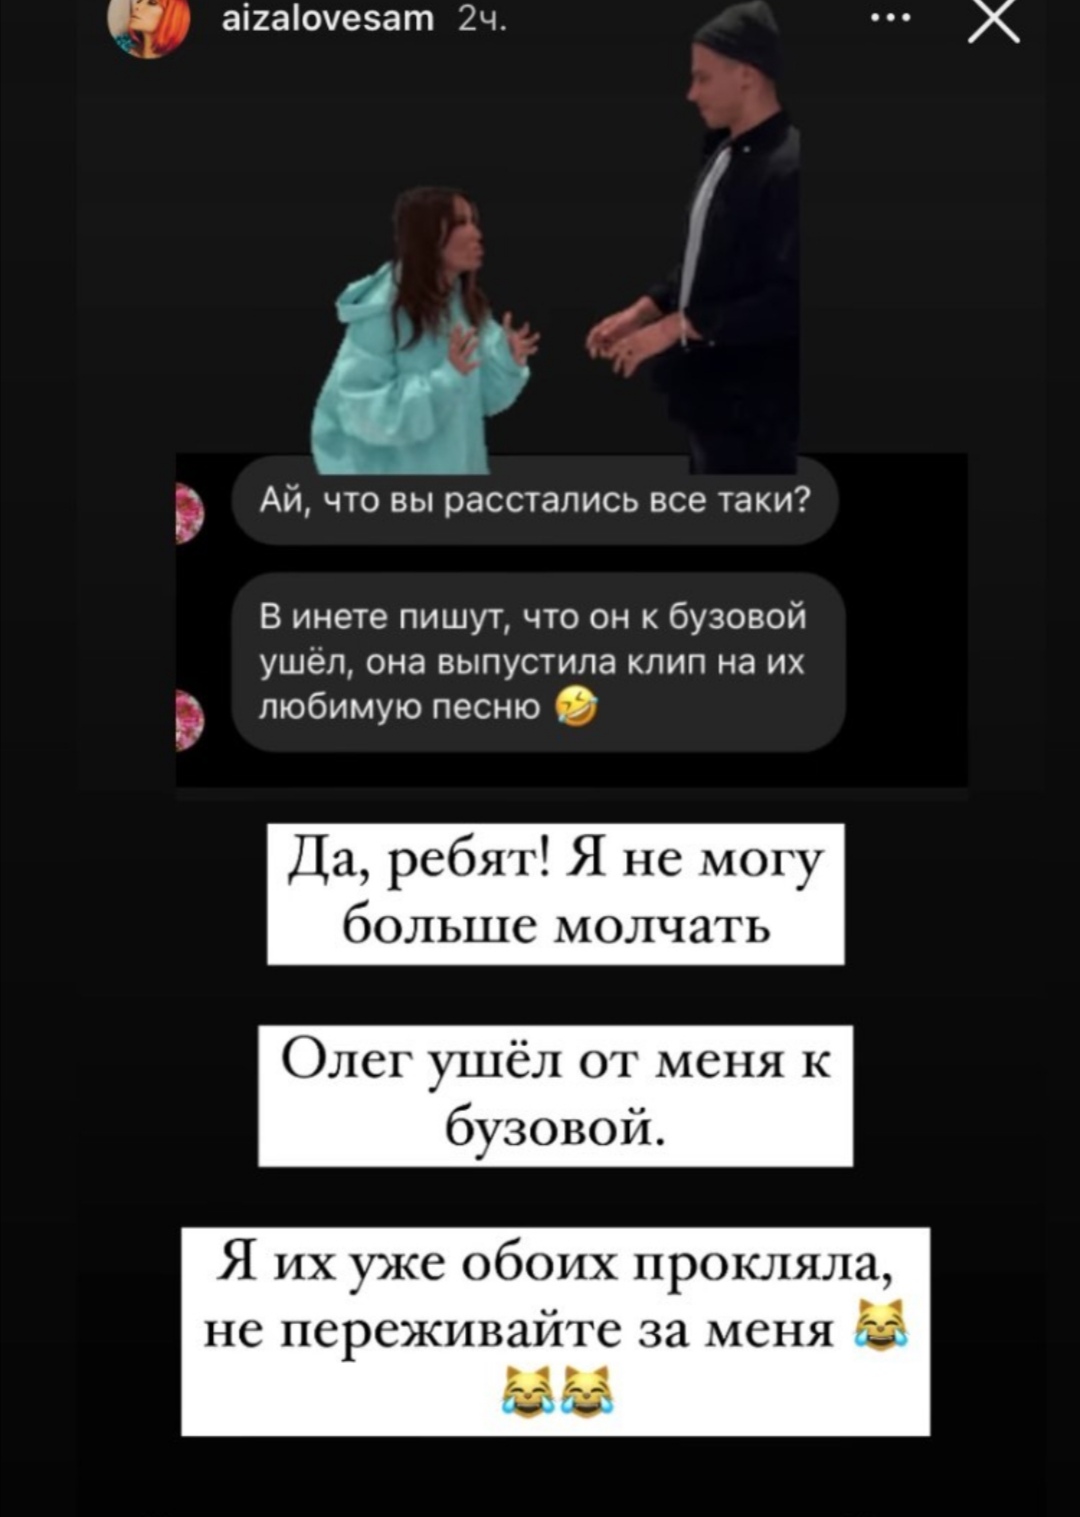 "Я их прокляла": Айза Долматова заявила, что Олег Майами теперь встречается с Ольгой Бузовой